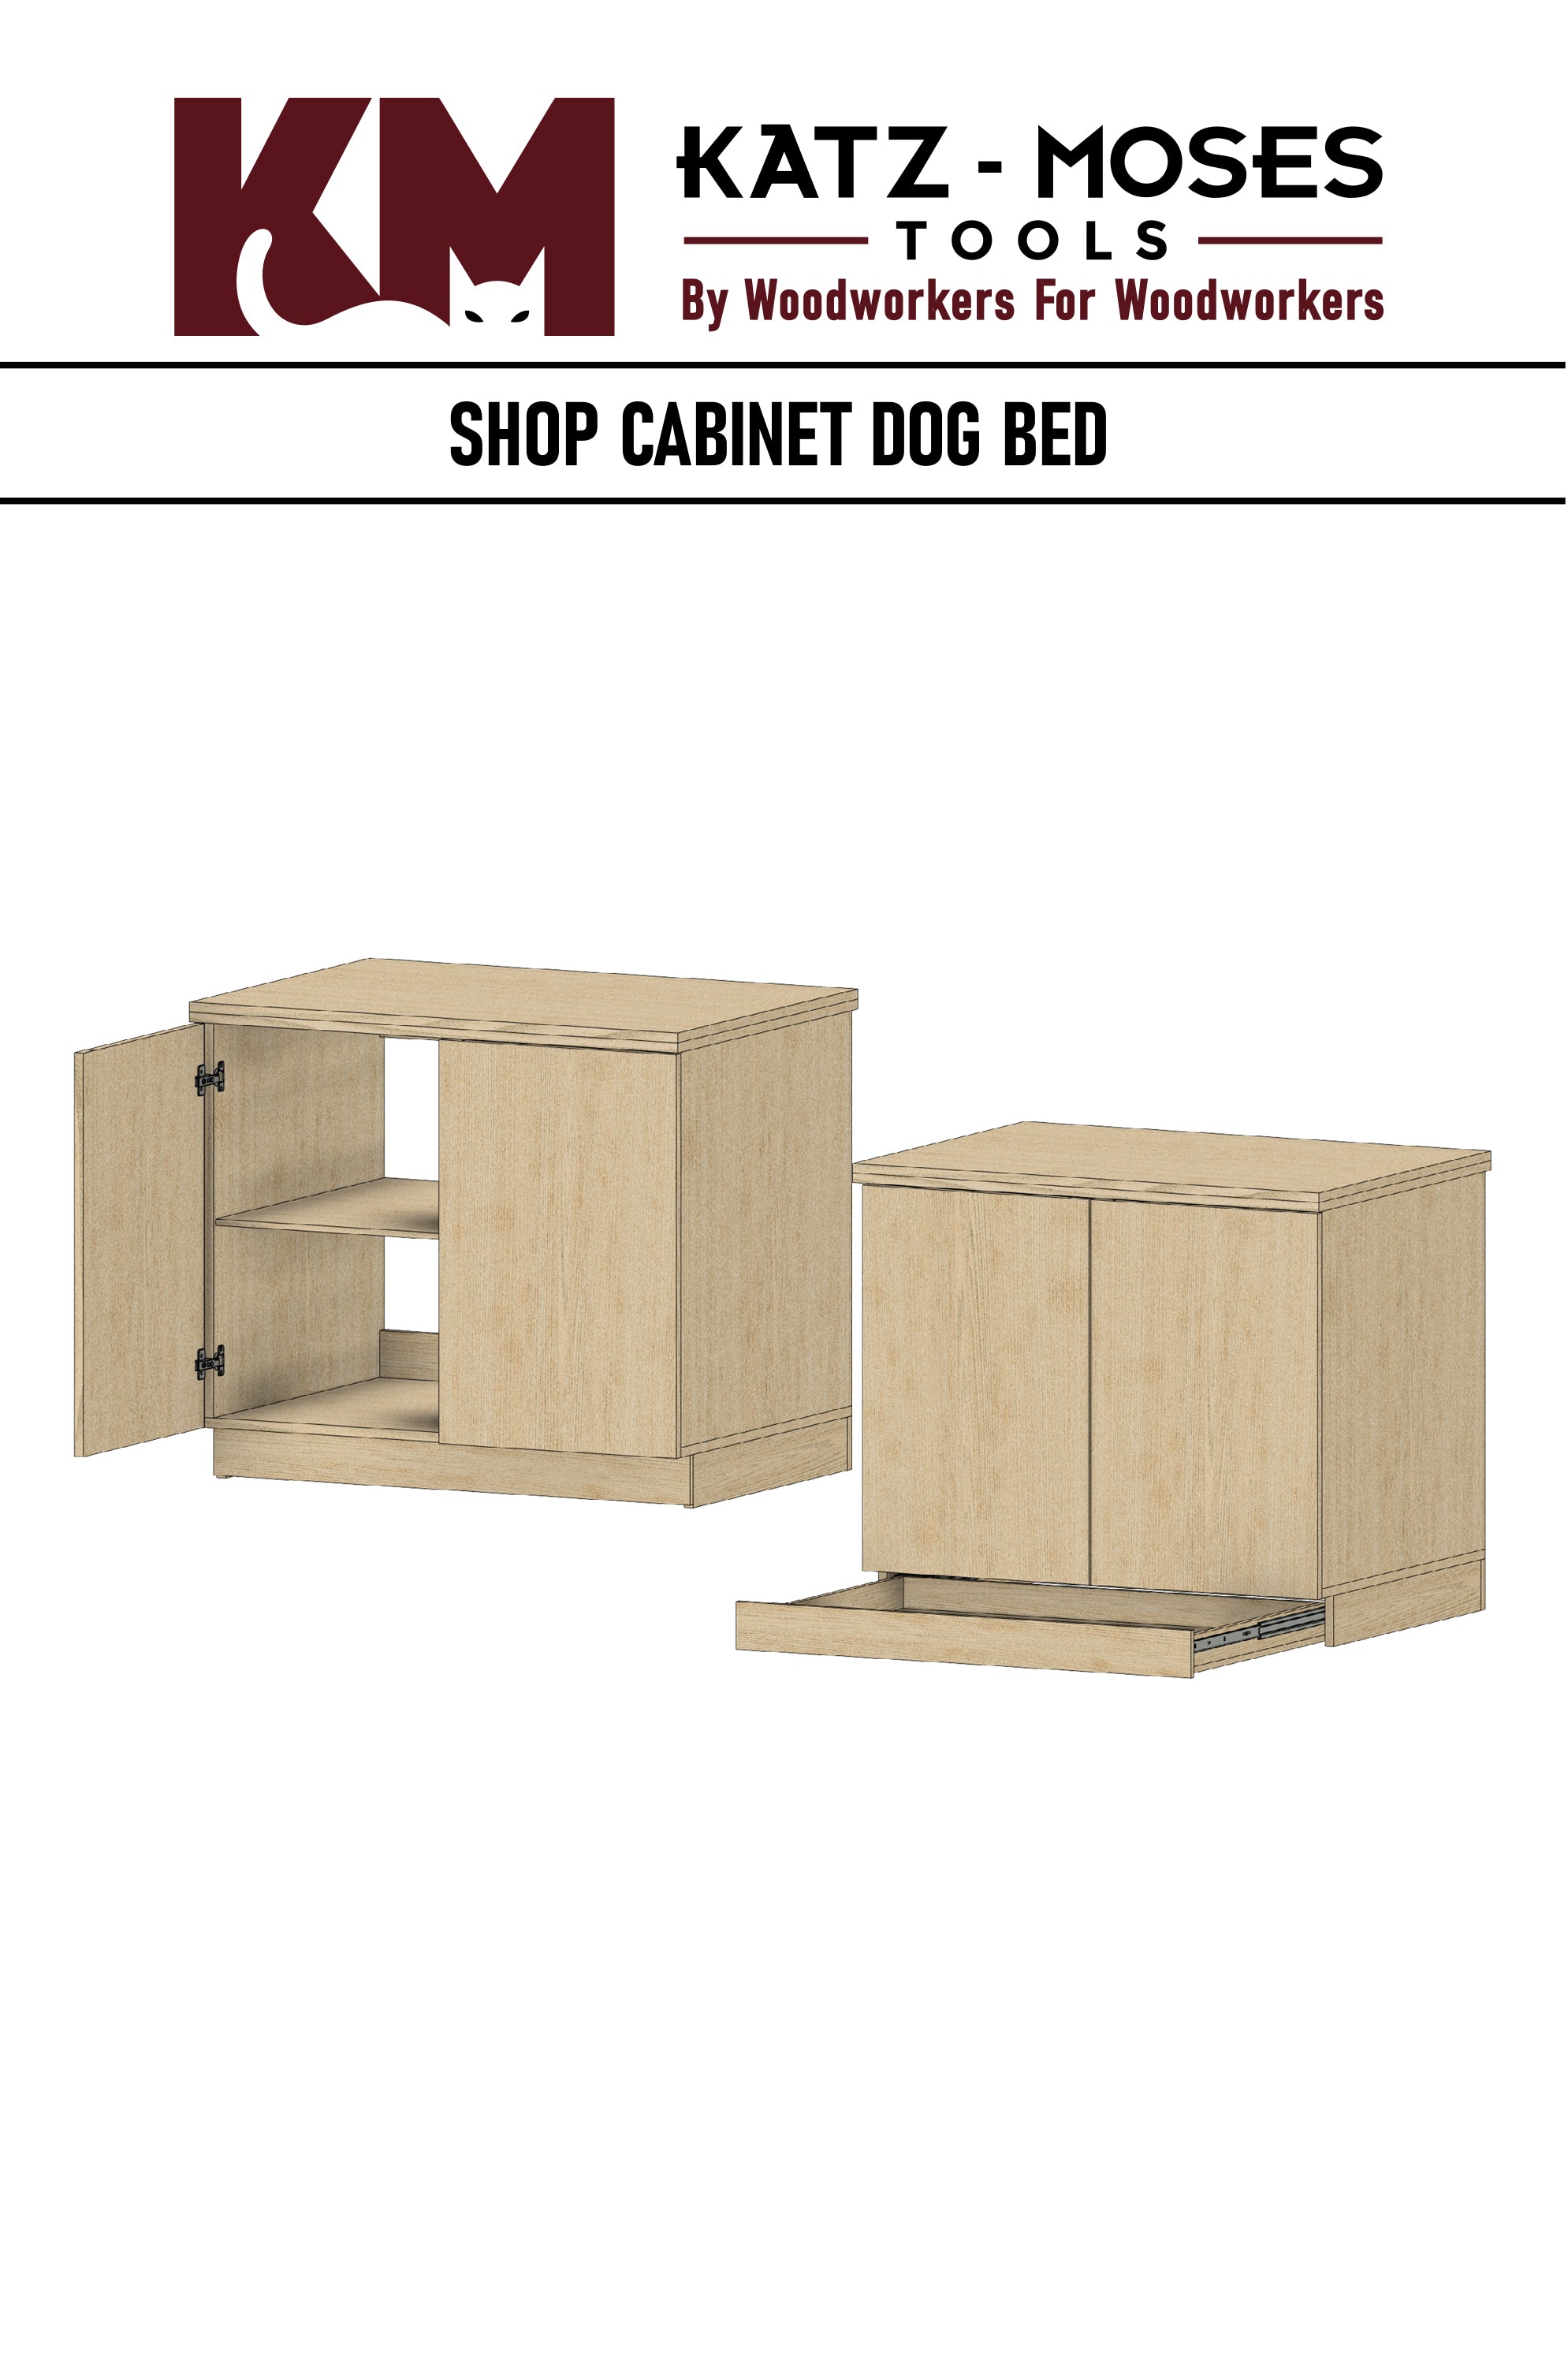 Shop Cabinet Dog Bed Build Plans